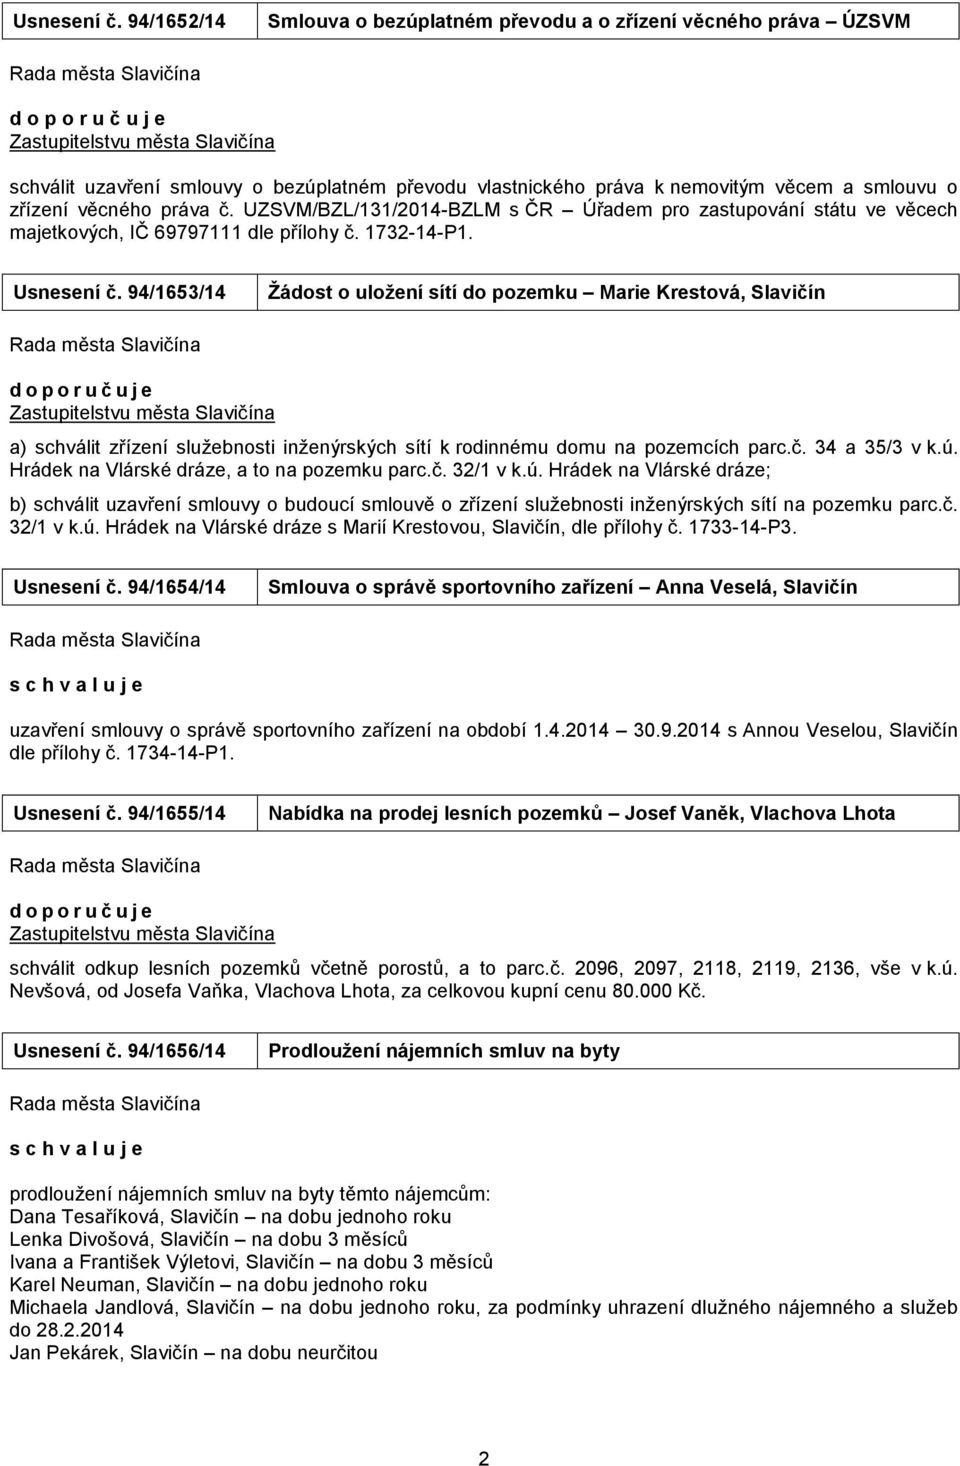 věcného práva č. UZSVM/BZL/3/04-BZLM s ČR Úřadem pro zastupování státu ve věcech majetkových, IČ 69797 dle přílohy č. 73-4-P.